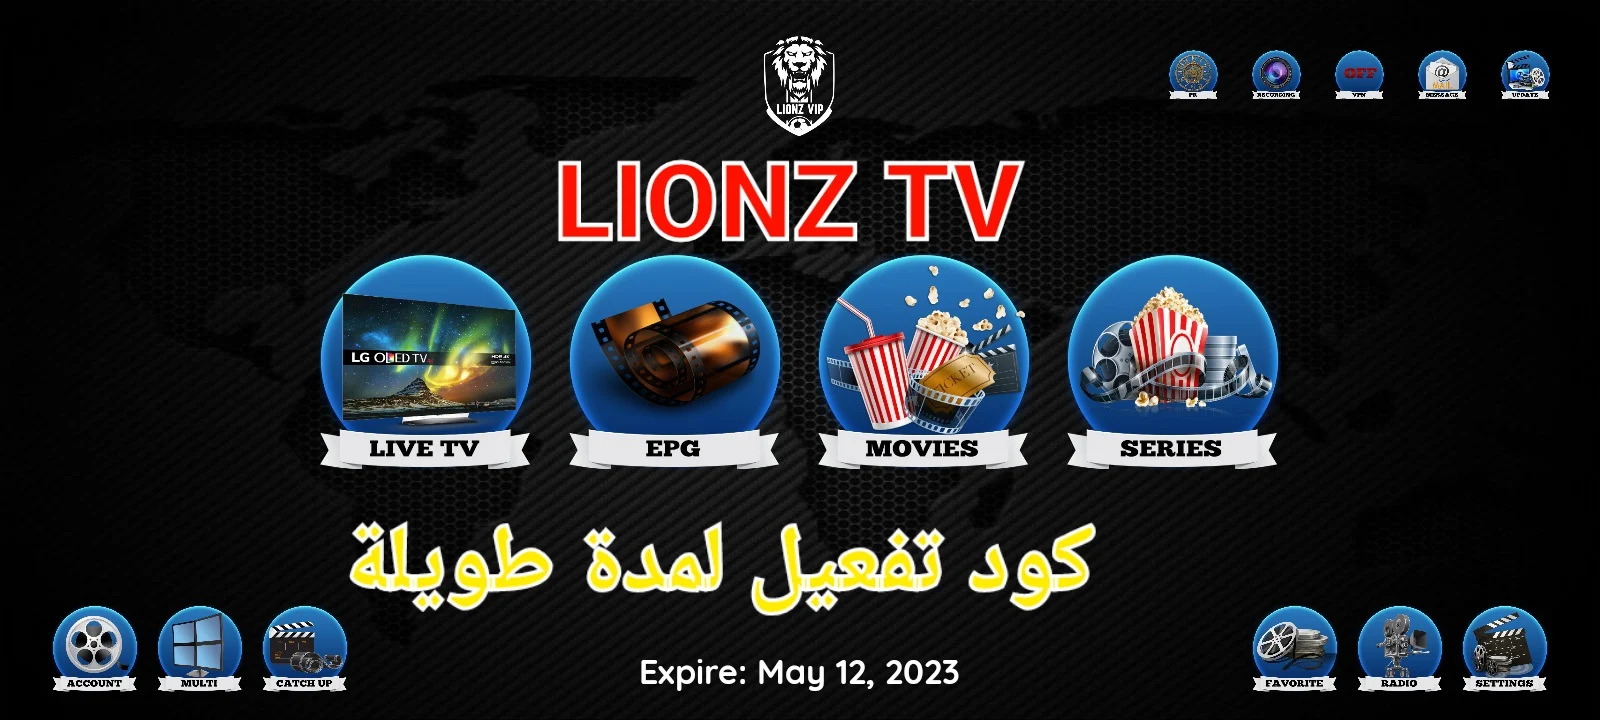 تحميل Lionz Tv pro + كود التفعيل لأجل الاندرويد - ليونز تي في تطبيق IPTV APK لمشاهدة القنوات المشفرة والغير مشفرة, باستخدام Lion vip Tv